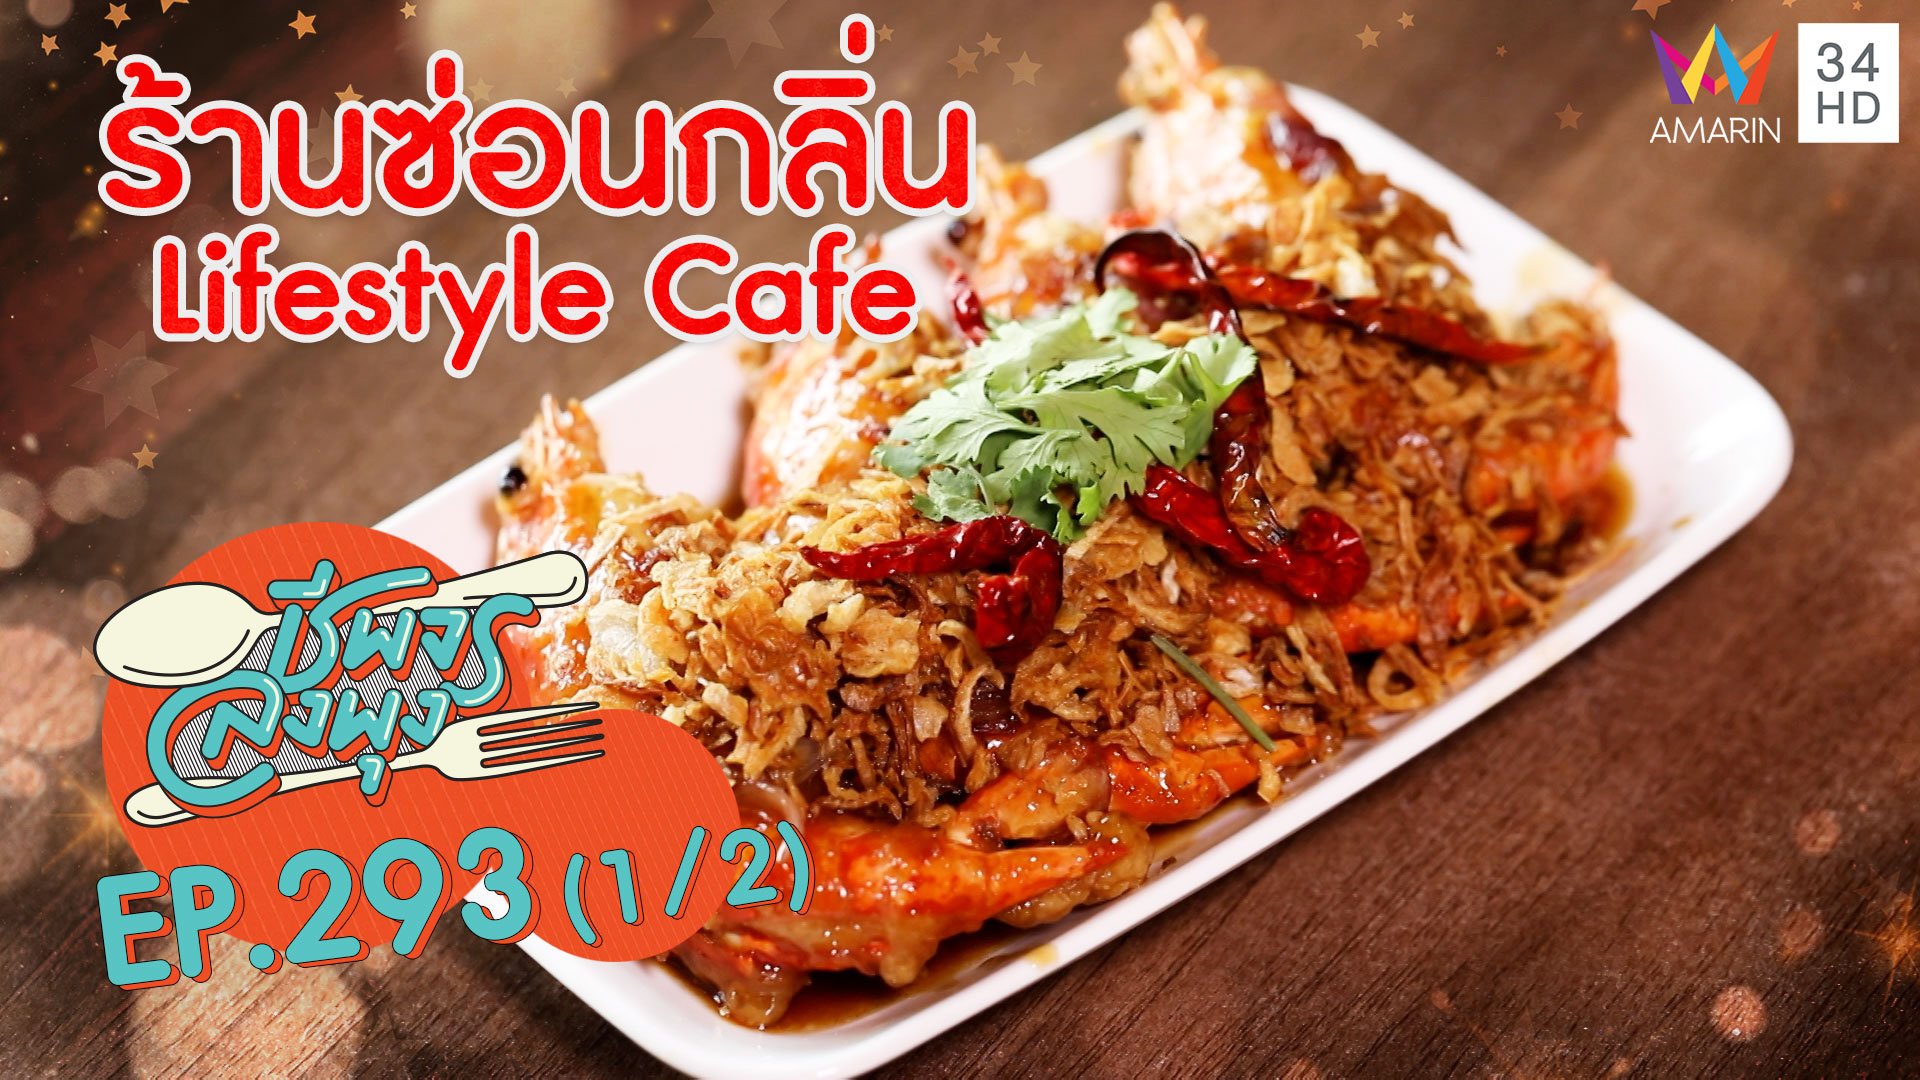 อาหารไทยรสชาติกลมกล่อม @ ร้านซ่อนกลิ่น Lifestyle Cafe | ชีพจรลงพุง | 11 เม.ย. 64 (1/2) | AMARIN TVHD34